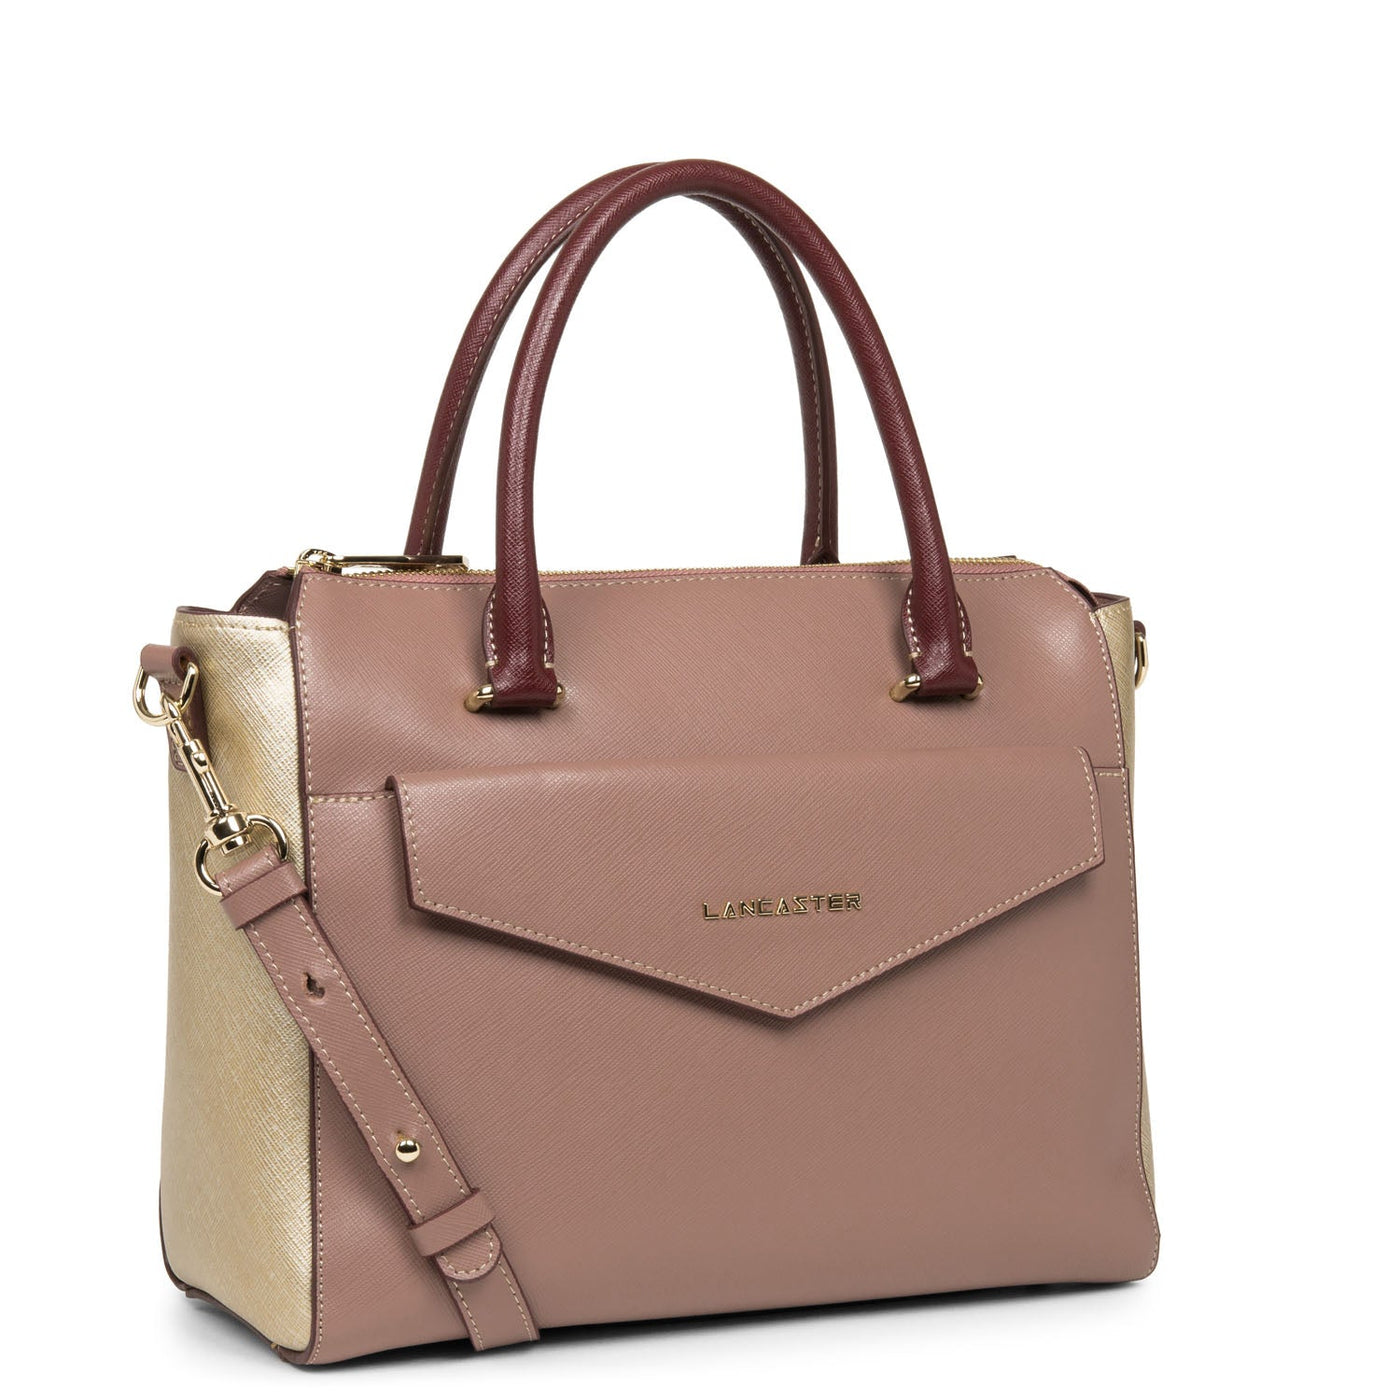 handbag - saffiano signature #couleur_rose-antique-champagne-bordeaux